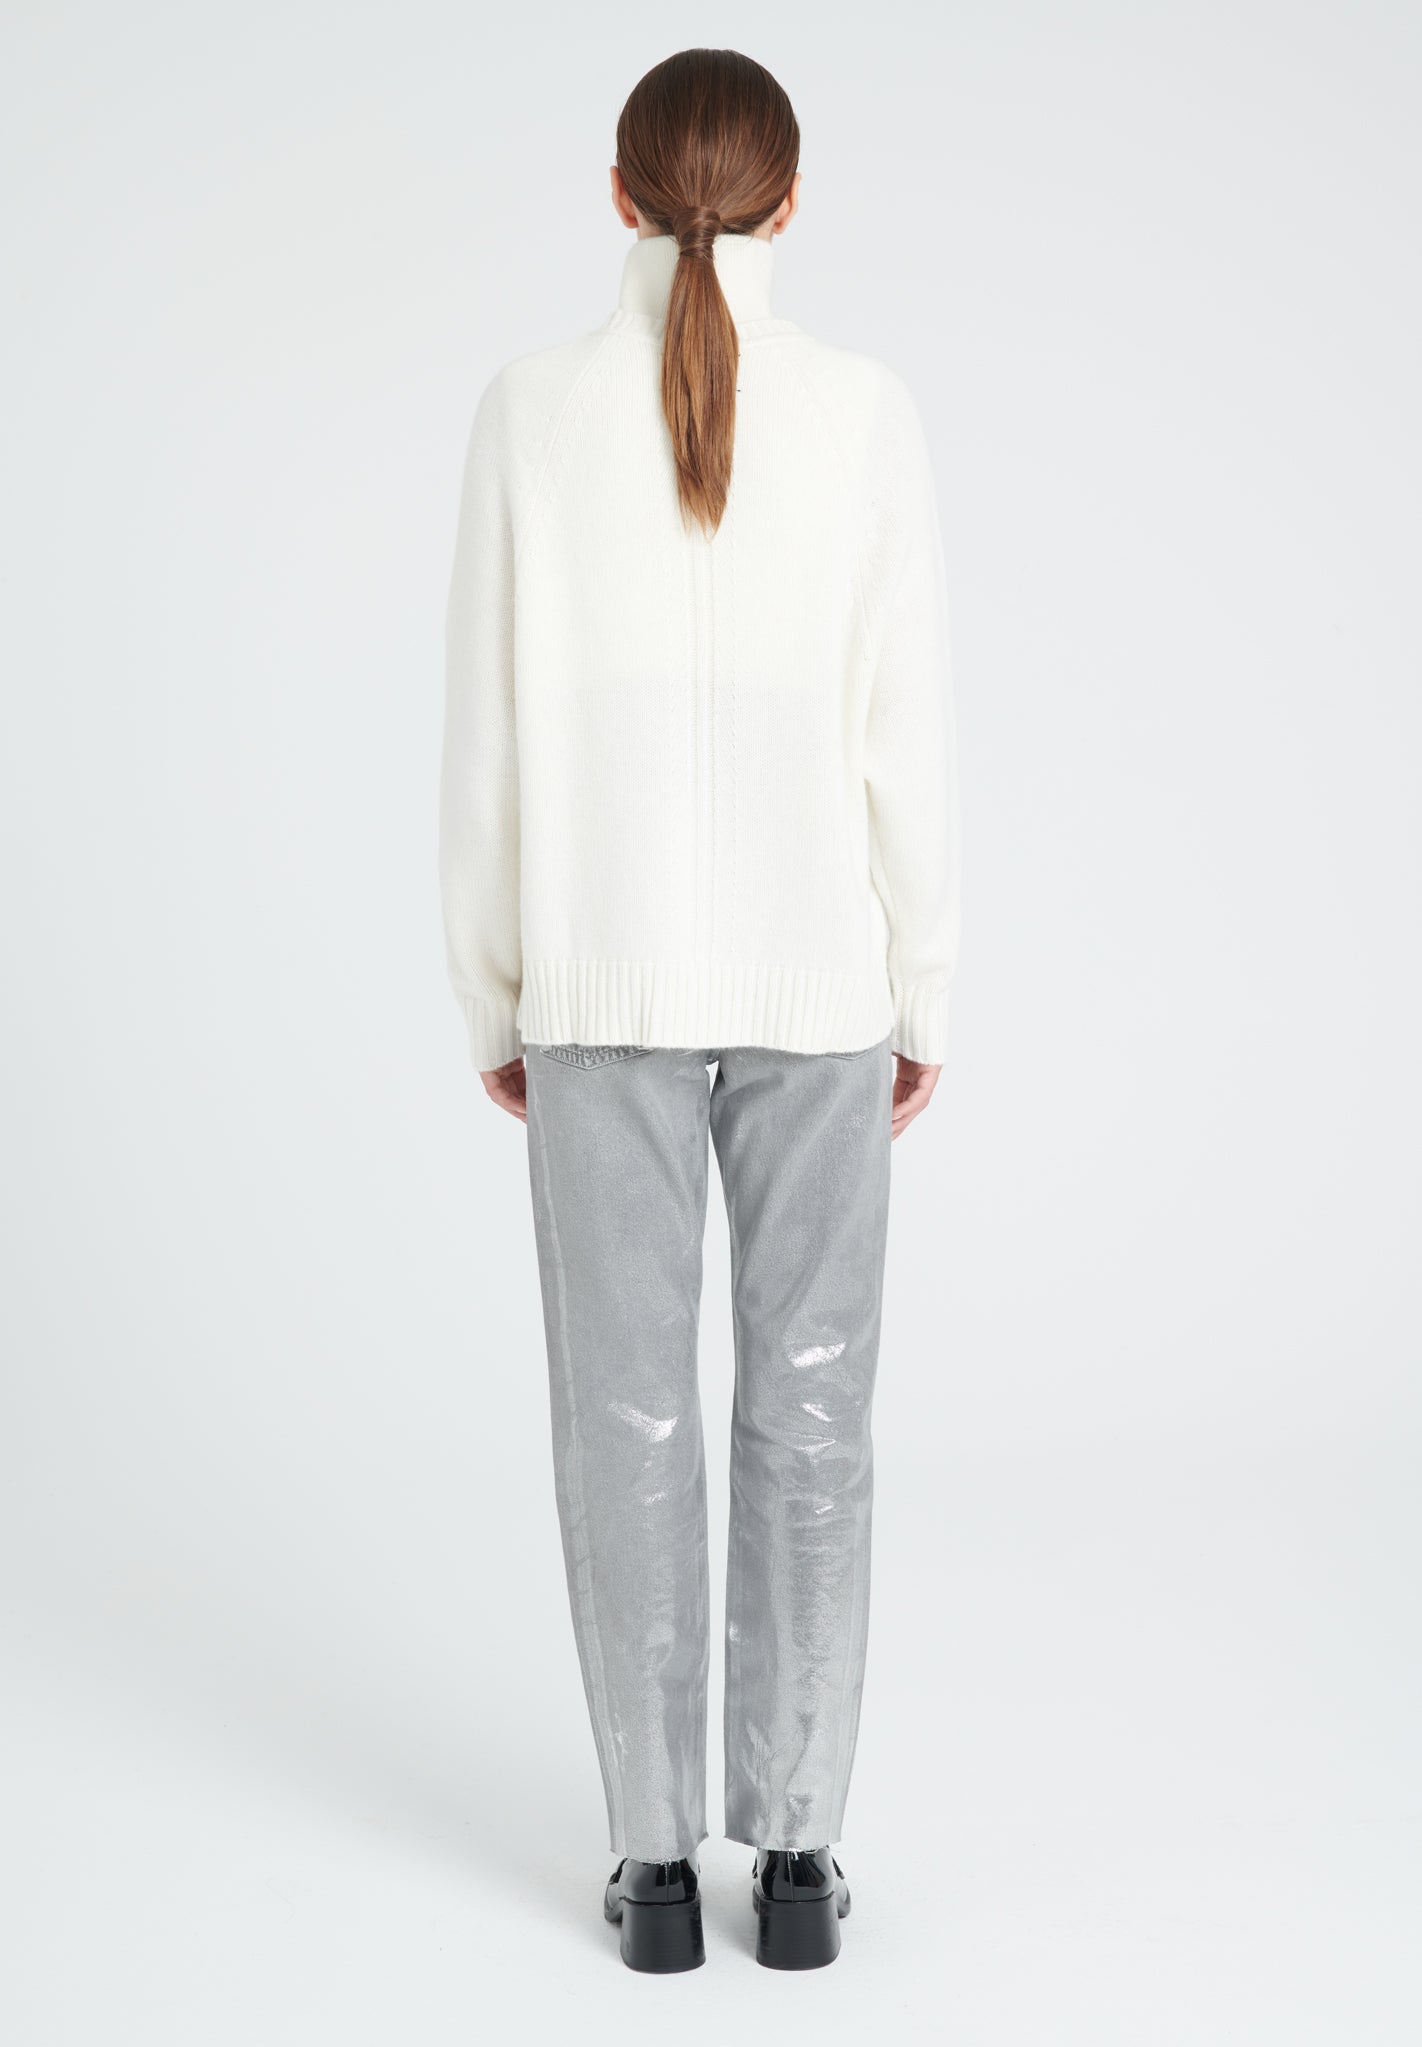 ZAYA 7 Round neck sweater with raglan sleeves in 6-thread cashmere, ecru white